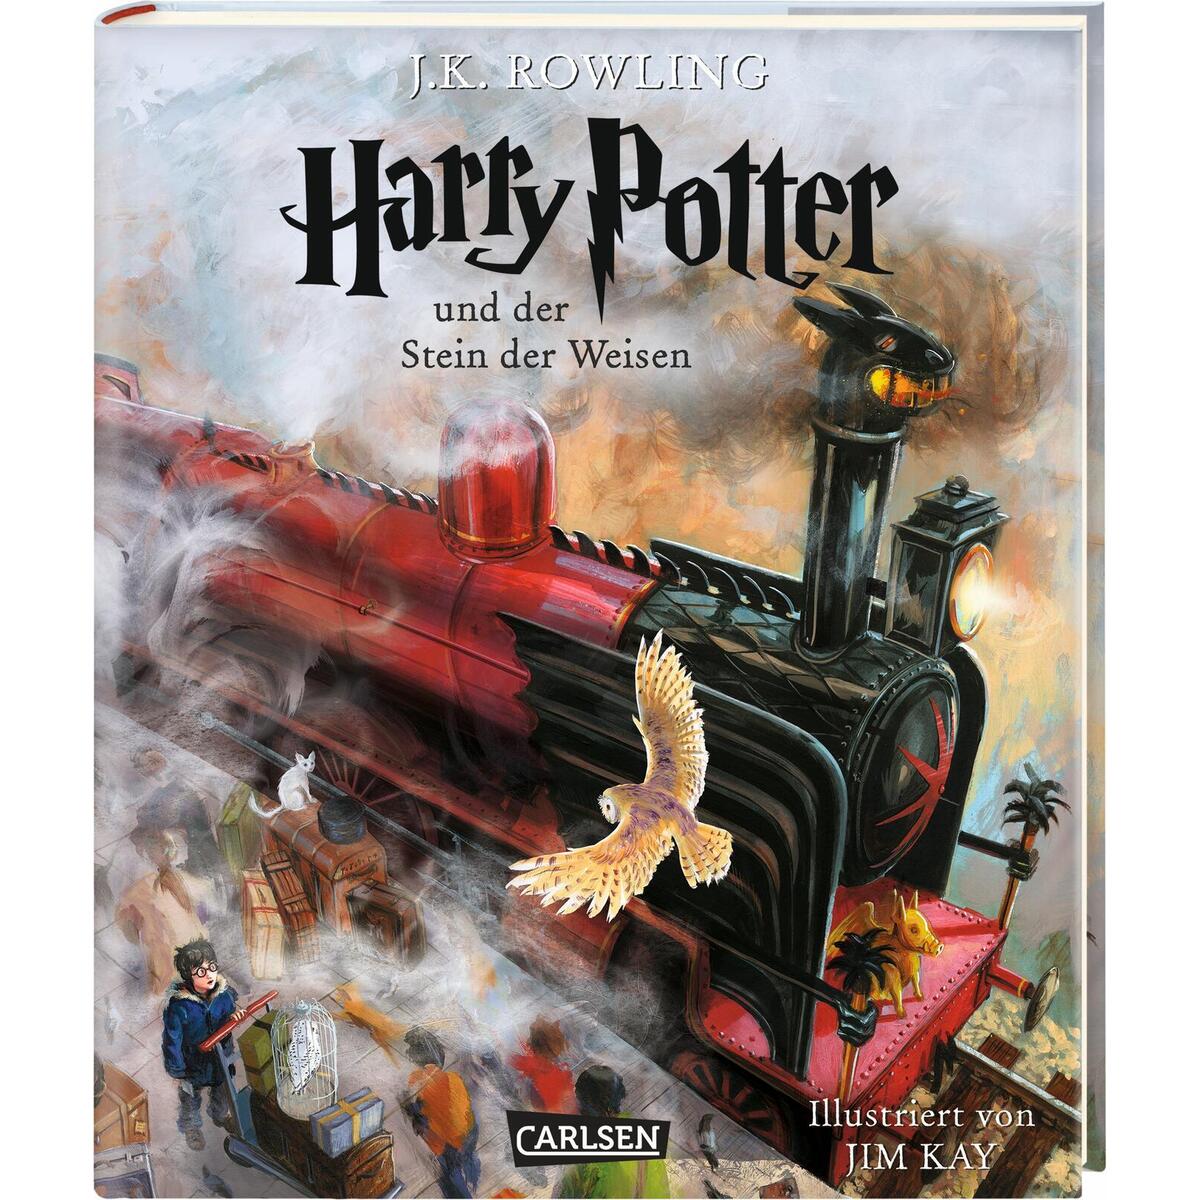 Harry Potter 1 und der Stein der Weisen. Schmuckausgabe von Carlsen Verlag GmbH